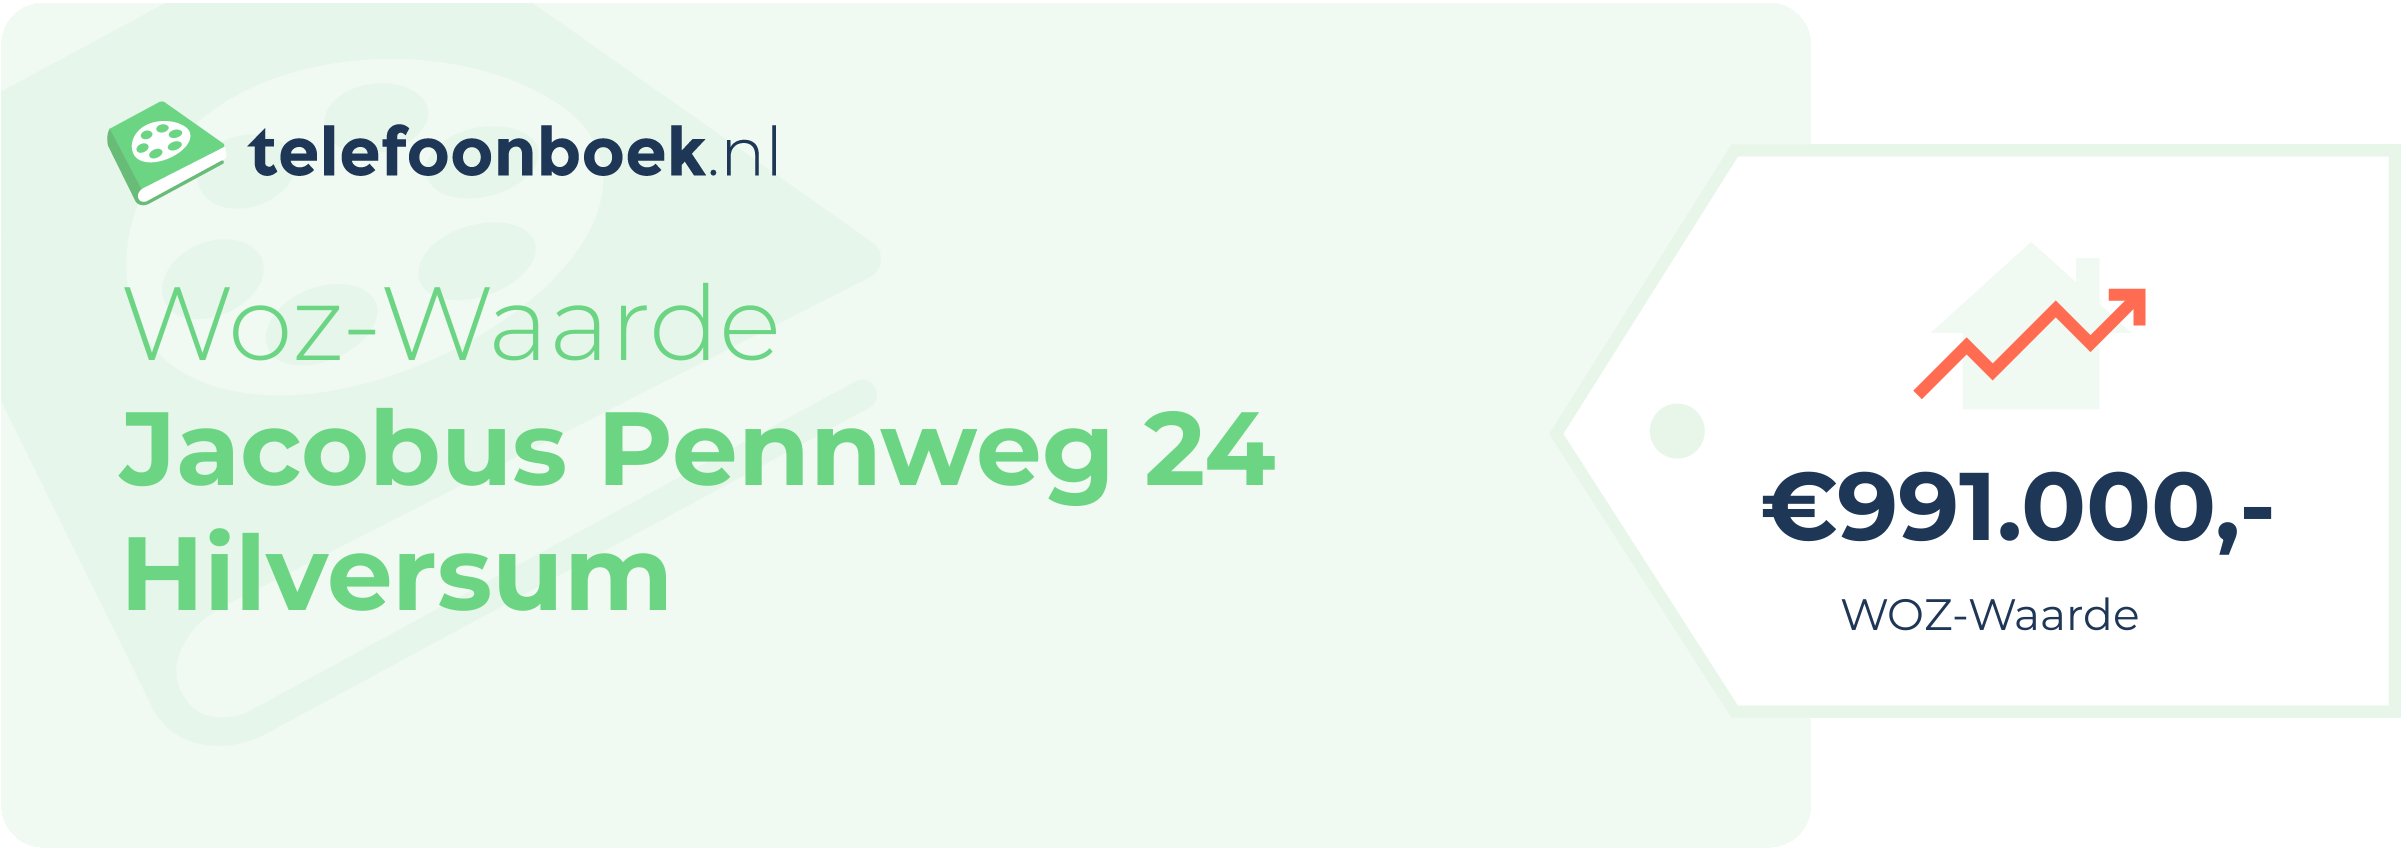 WOZ-waarde Jacobus Pennweg 24 Hilversum